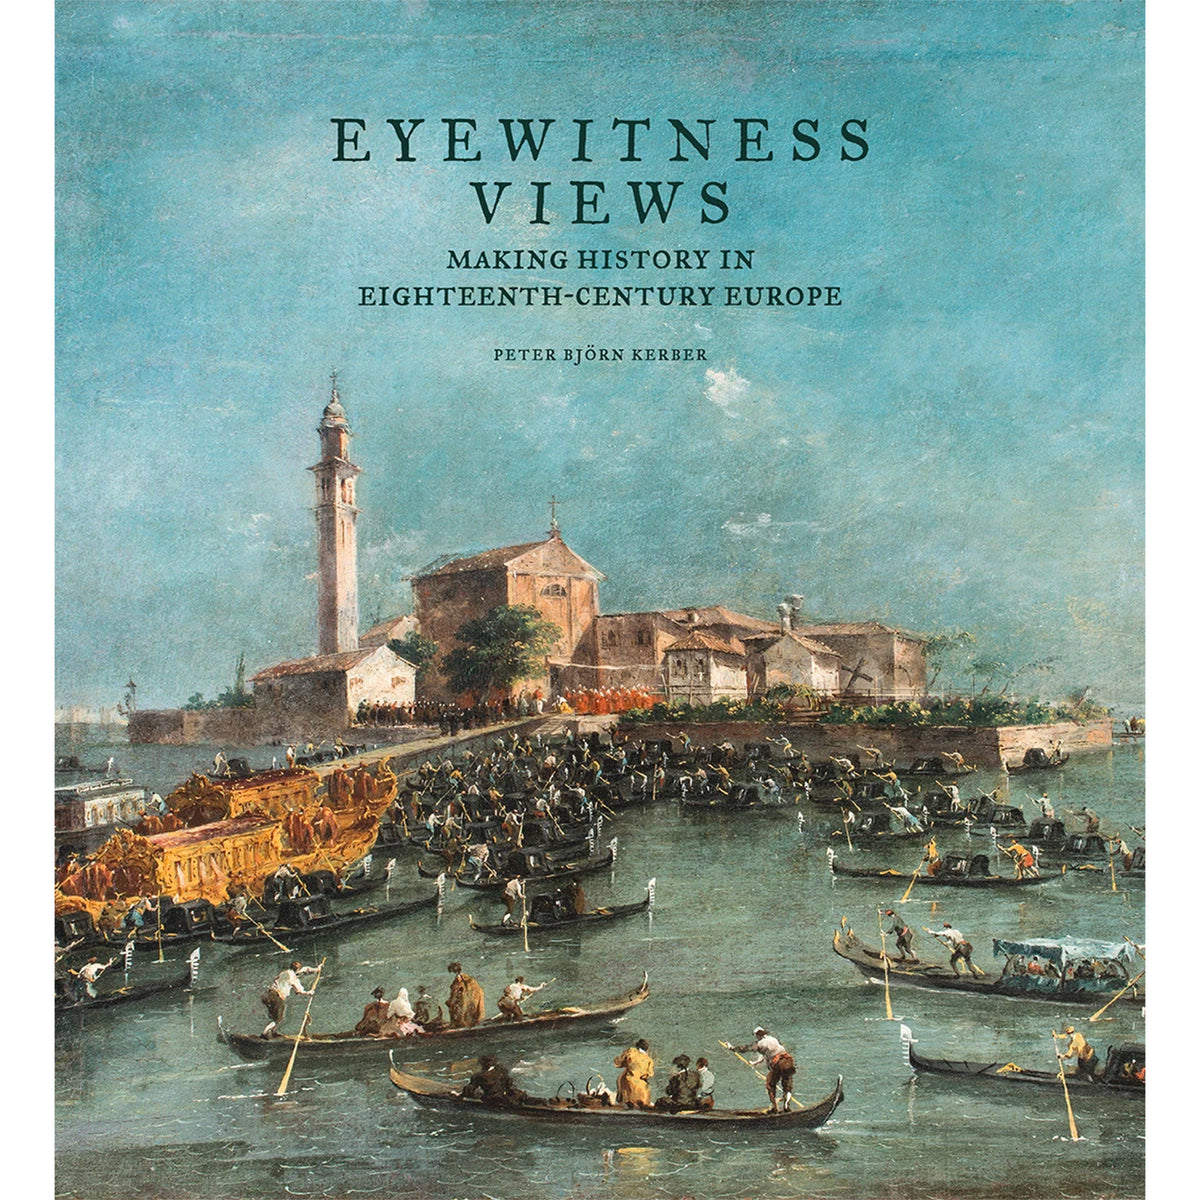 Eyewitness Views: Making History in Eighteenth-Century Europe